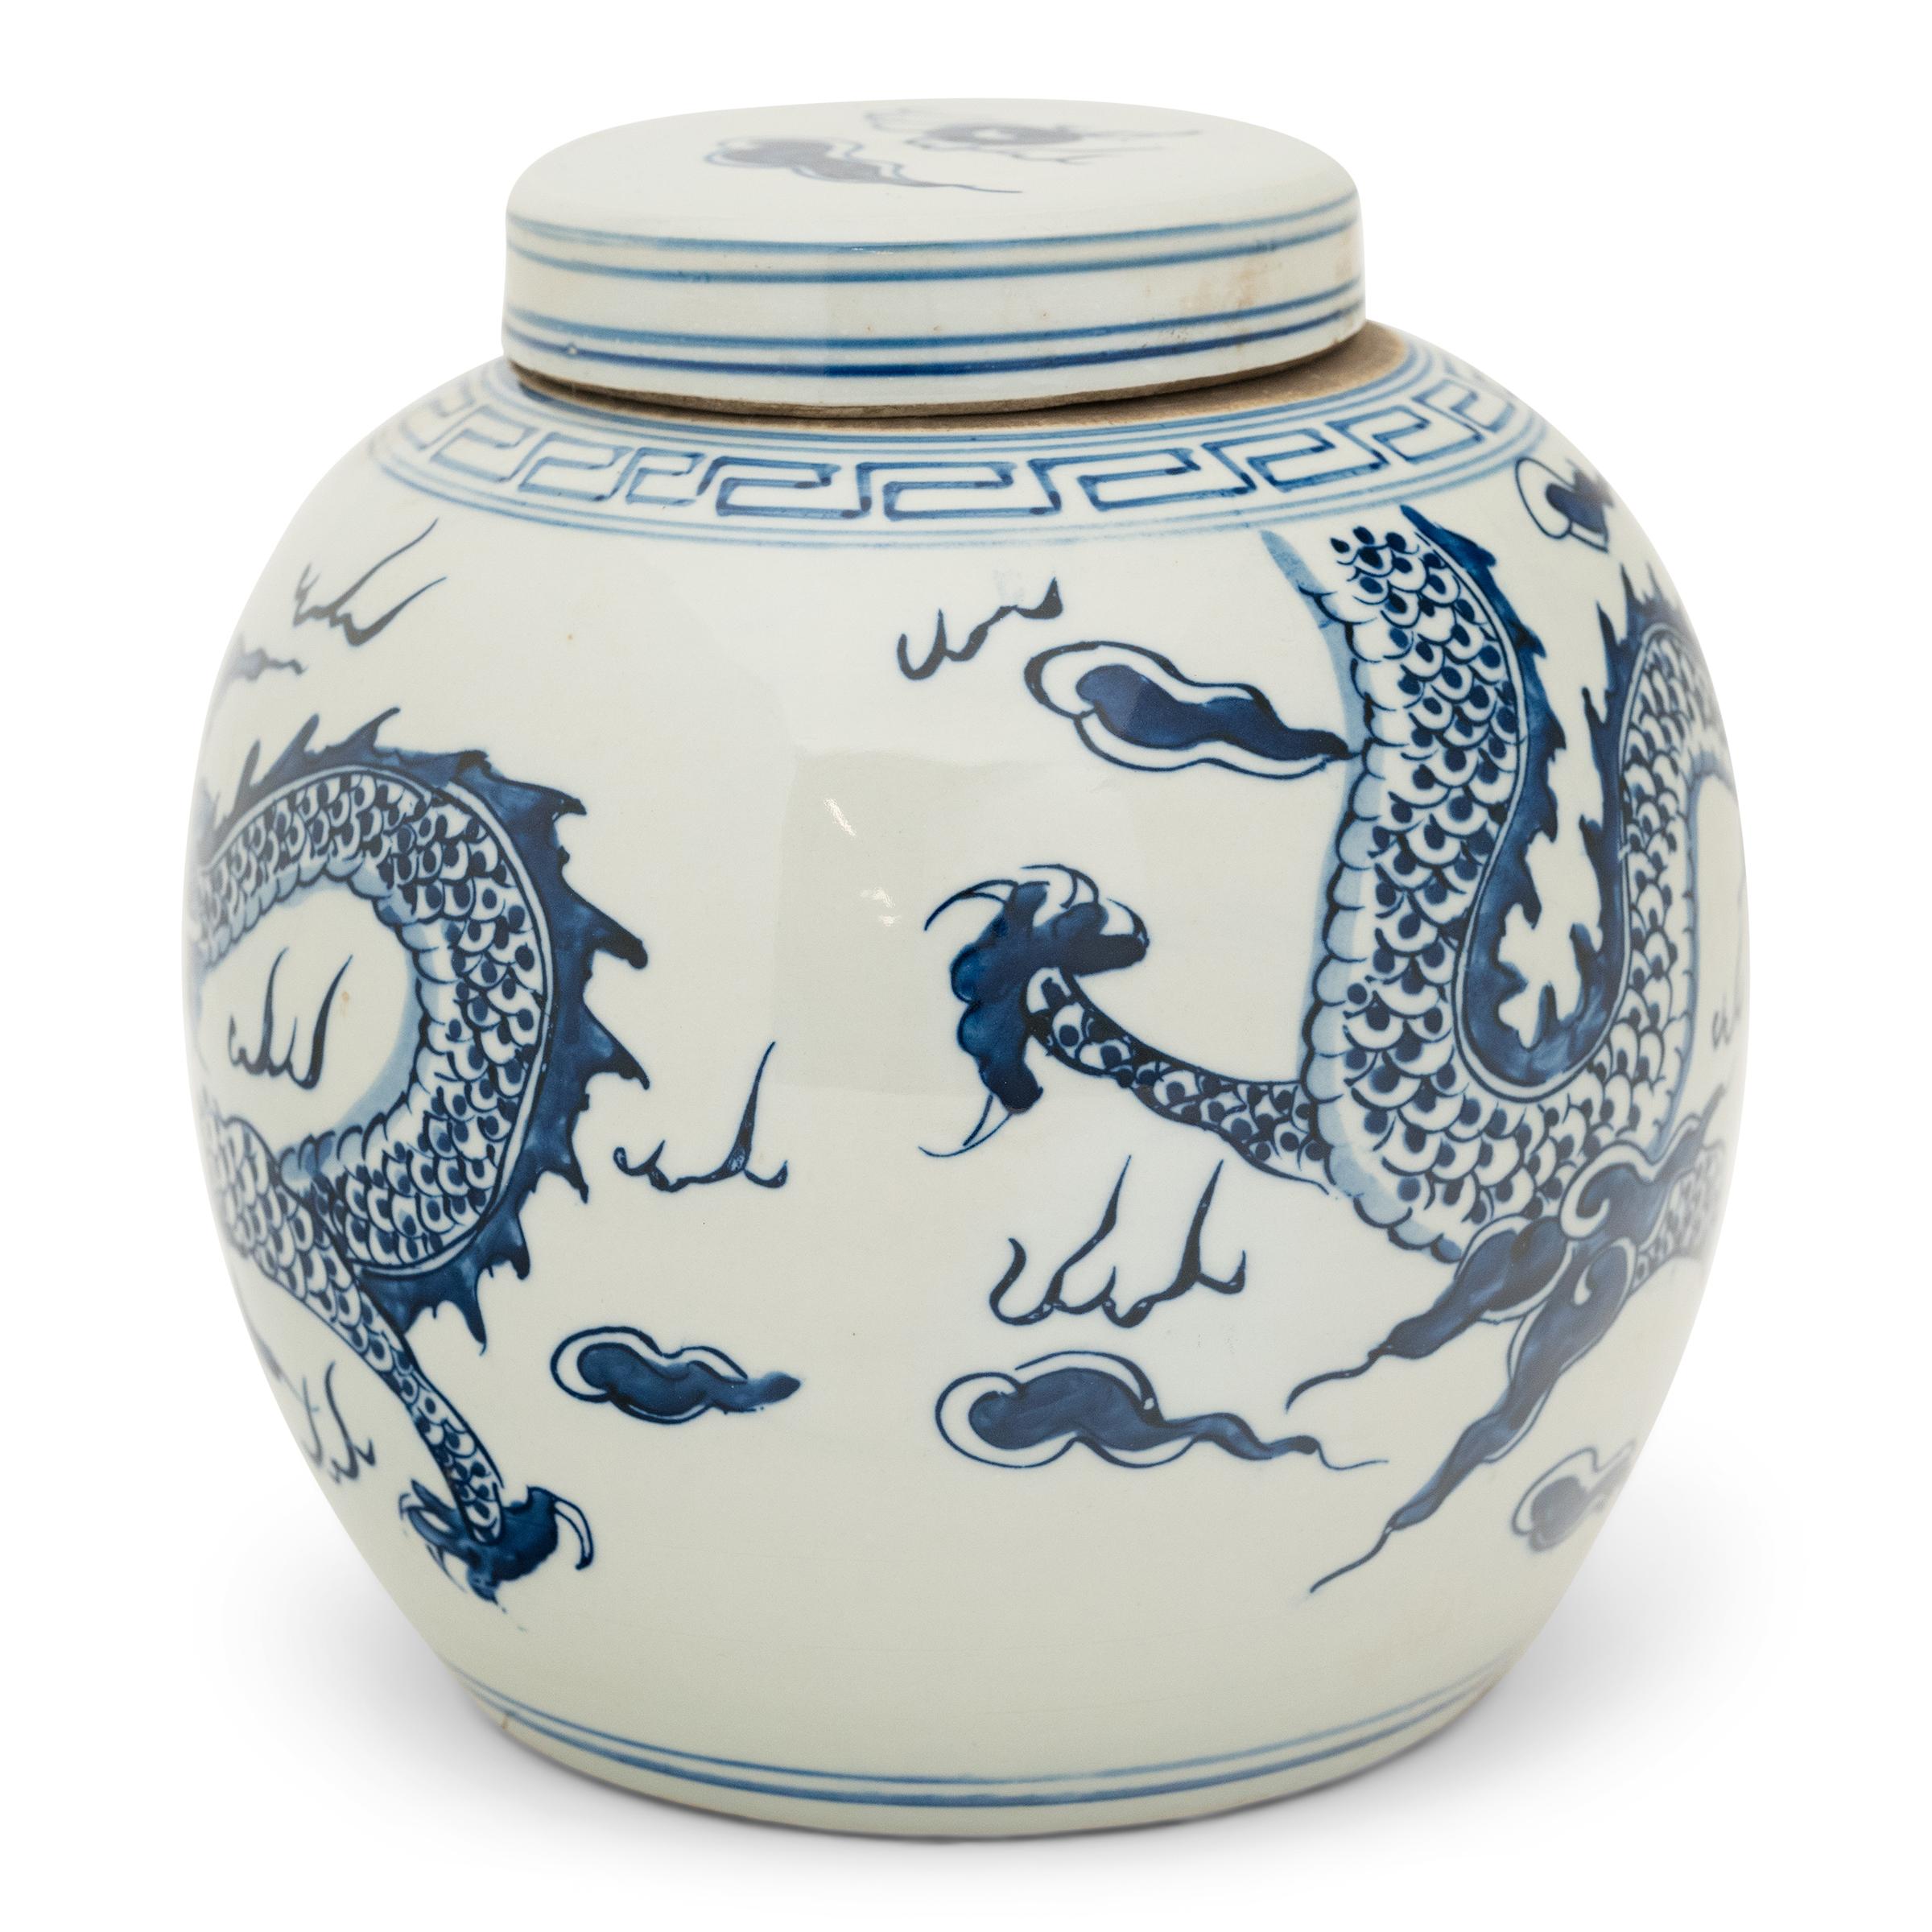 Cette grande jarre en porcelaine est magnifiquement émaillée dans le style classique bleu et blanc, avec un décor bleu cobalt peint à la main sur un fond blanc éclatant. La jarre a une forme arrondie et un couvercle plat, une forme traditionnelle